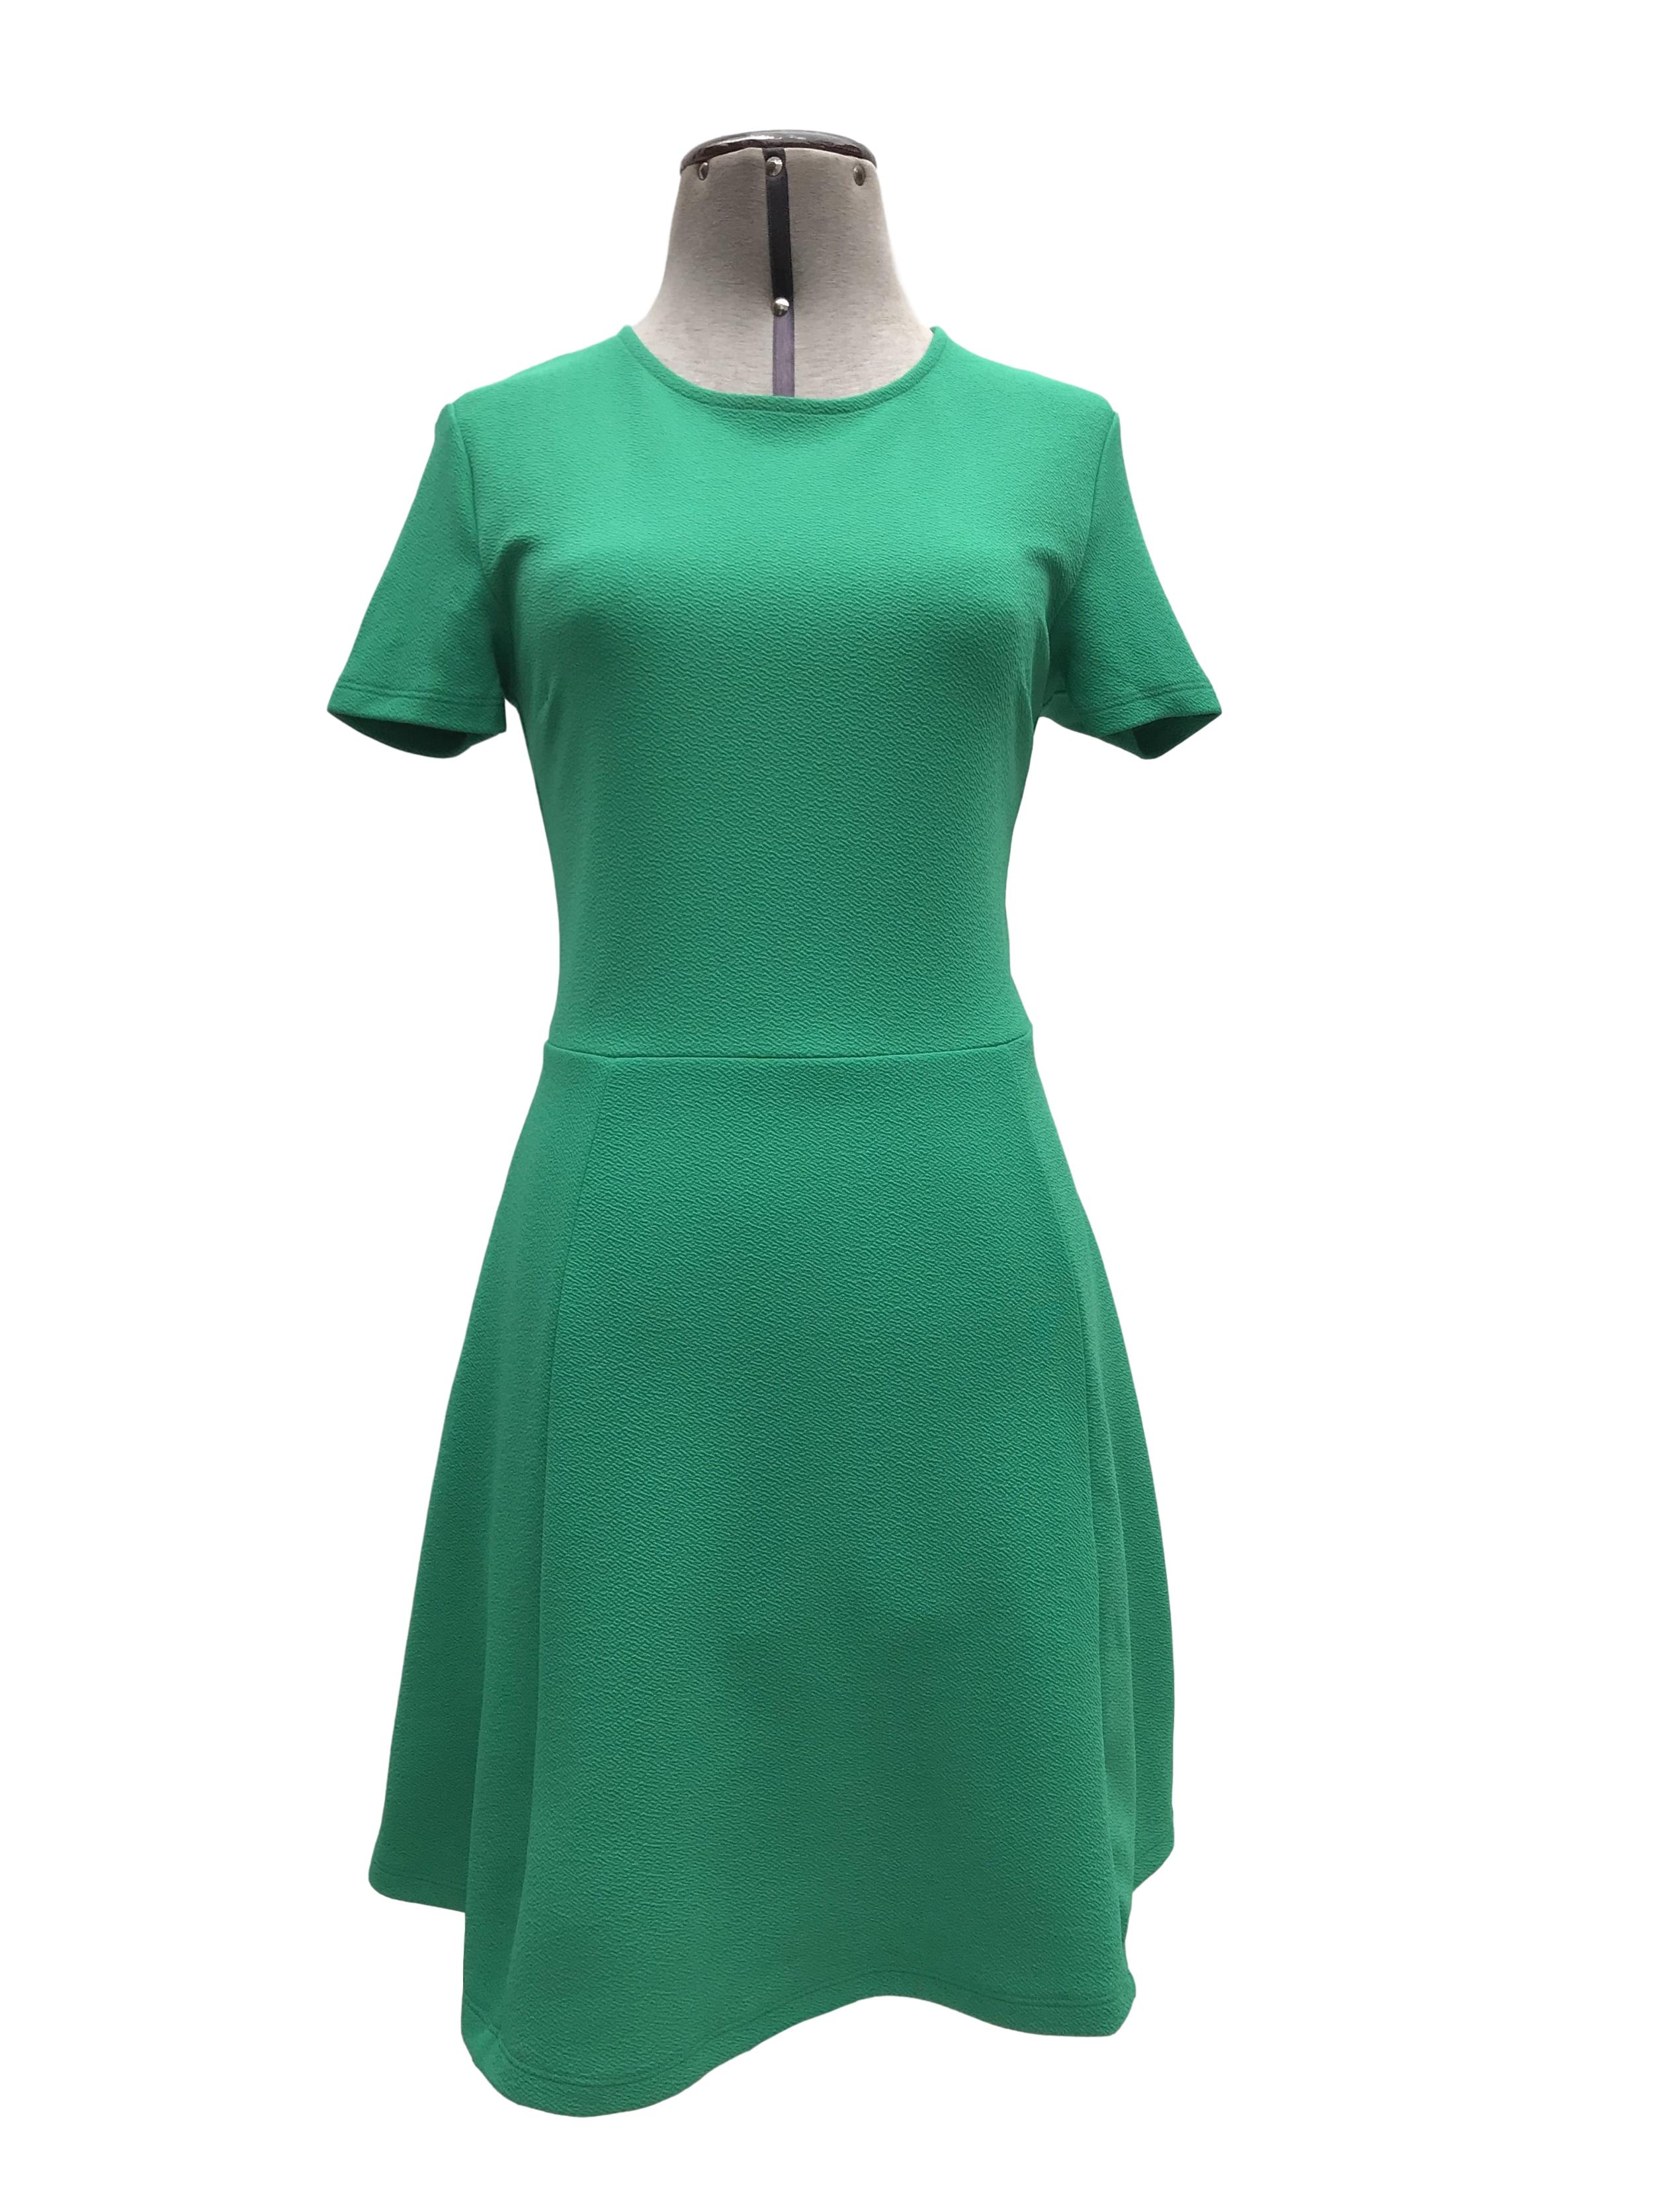 Vestido H&M verde con textura, corte a la cintura y falda en A. Largo 85cm